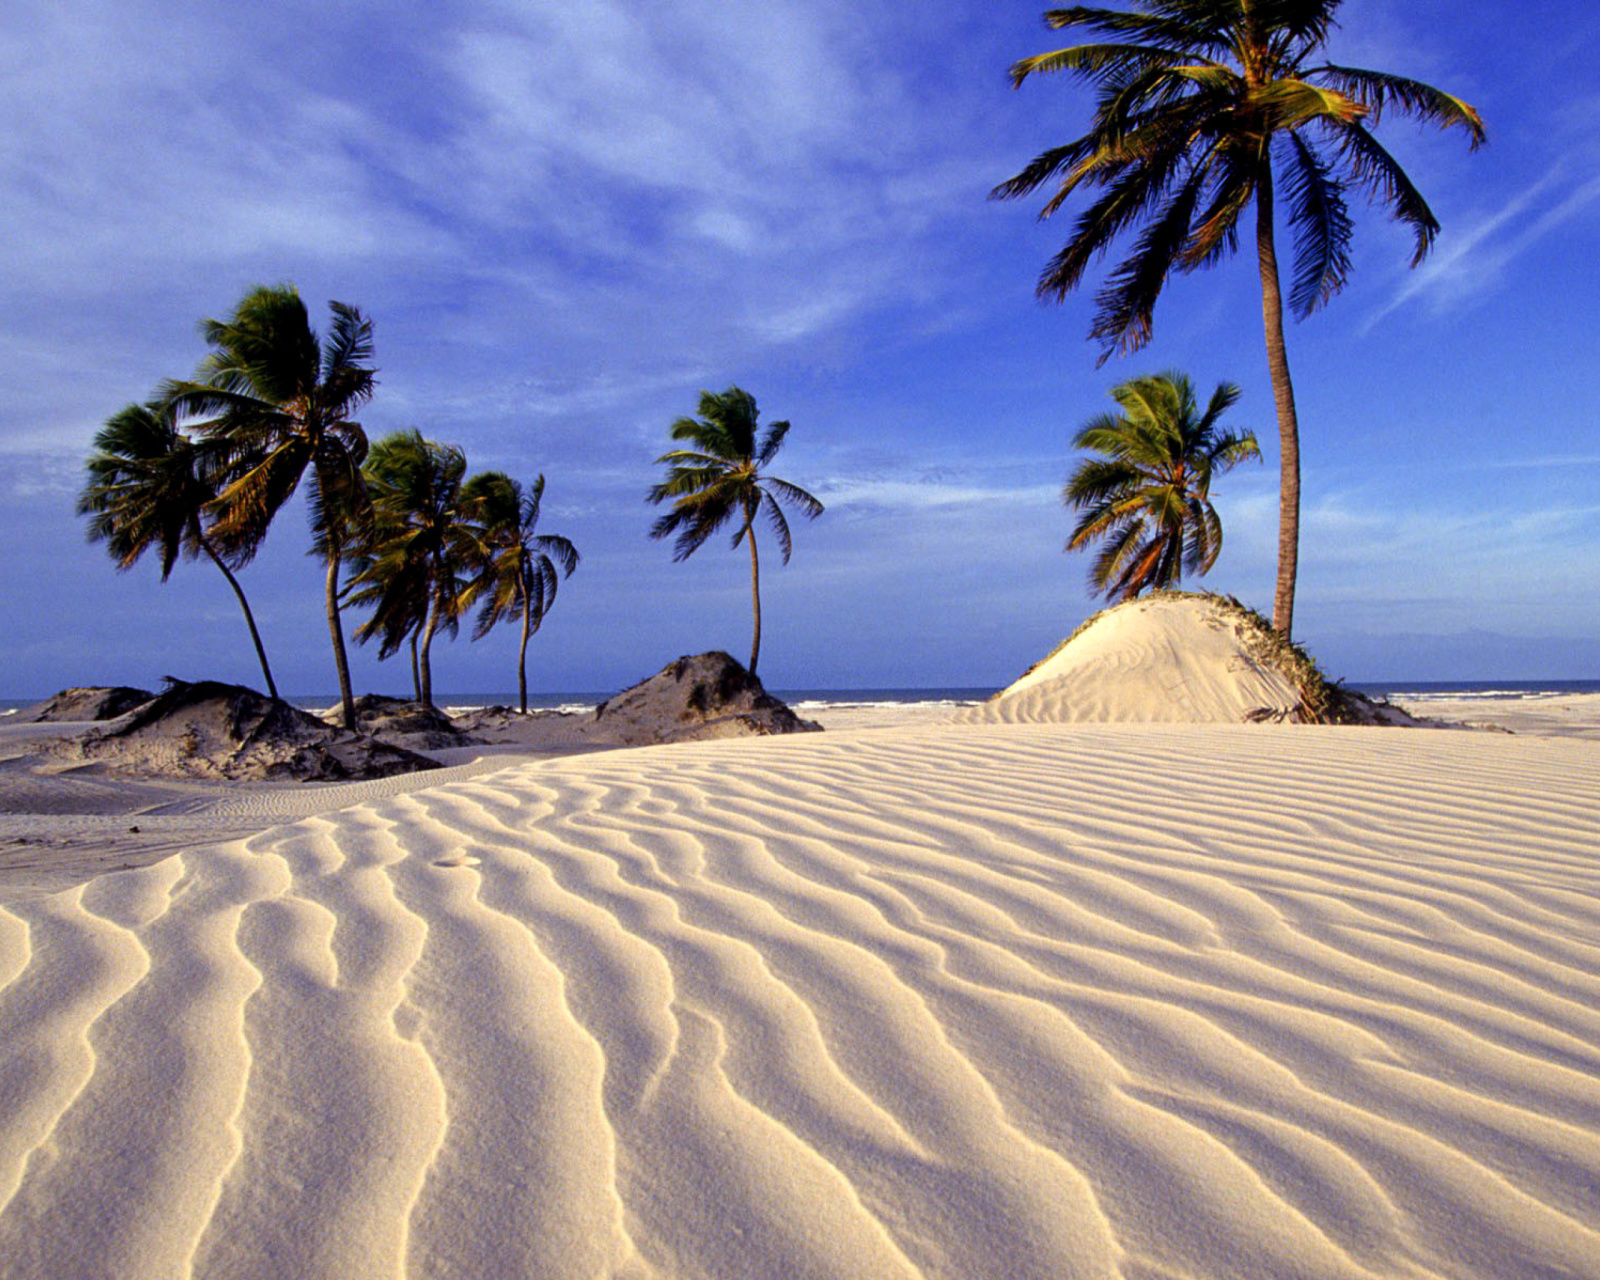 Sfondi Bahia Beach Resorts Puerto Rico 1600x1280